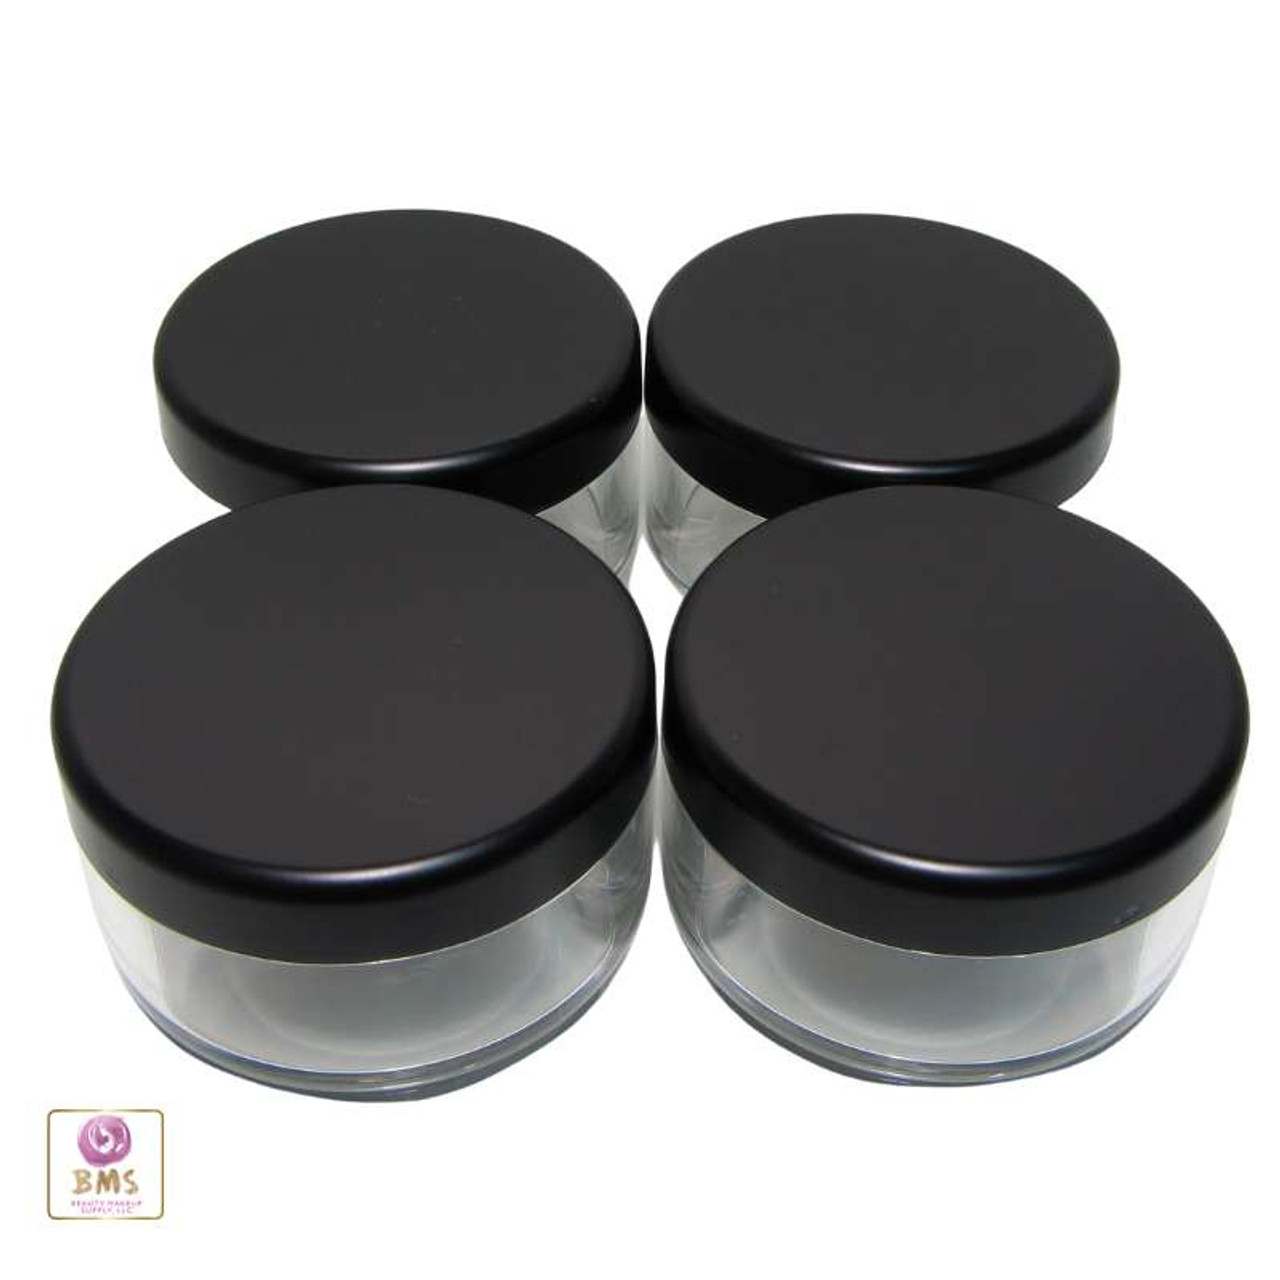 Bona RNAB07BFHK26R blendin black jar lid, compatible with original